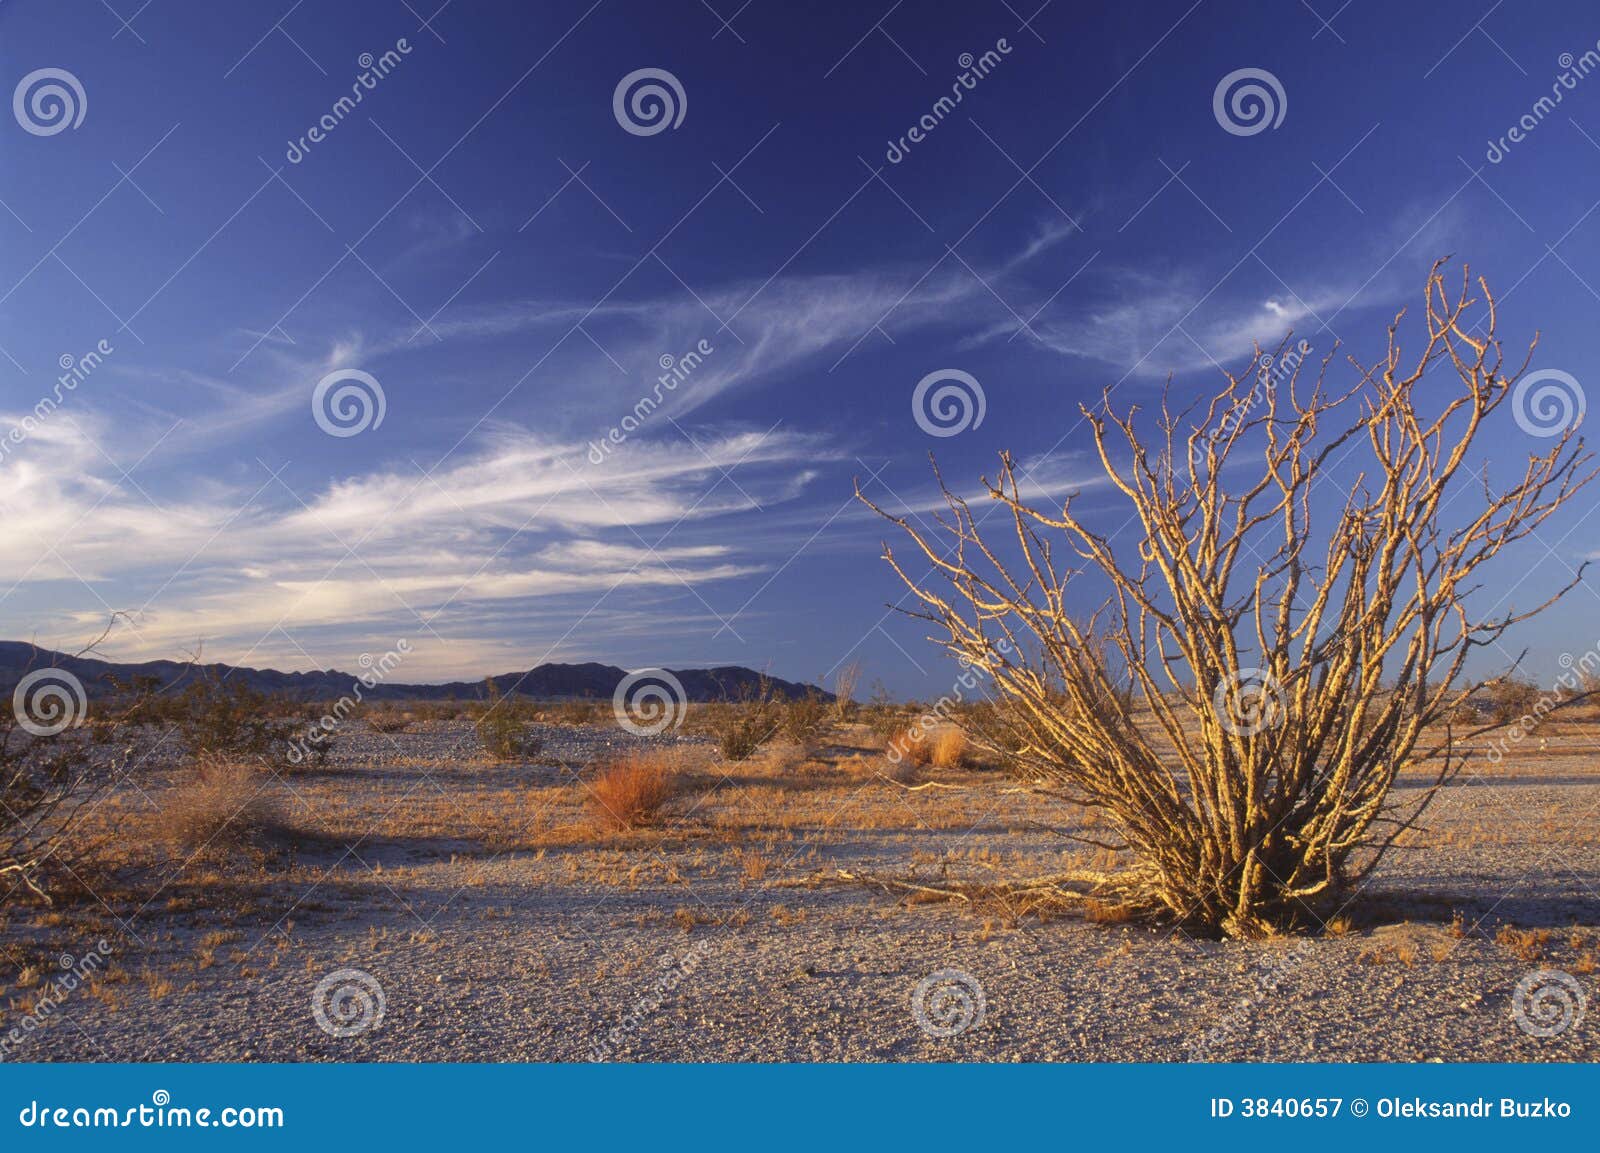 ocotillo cactus in the california desert